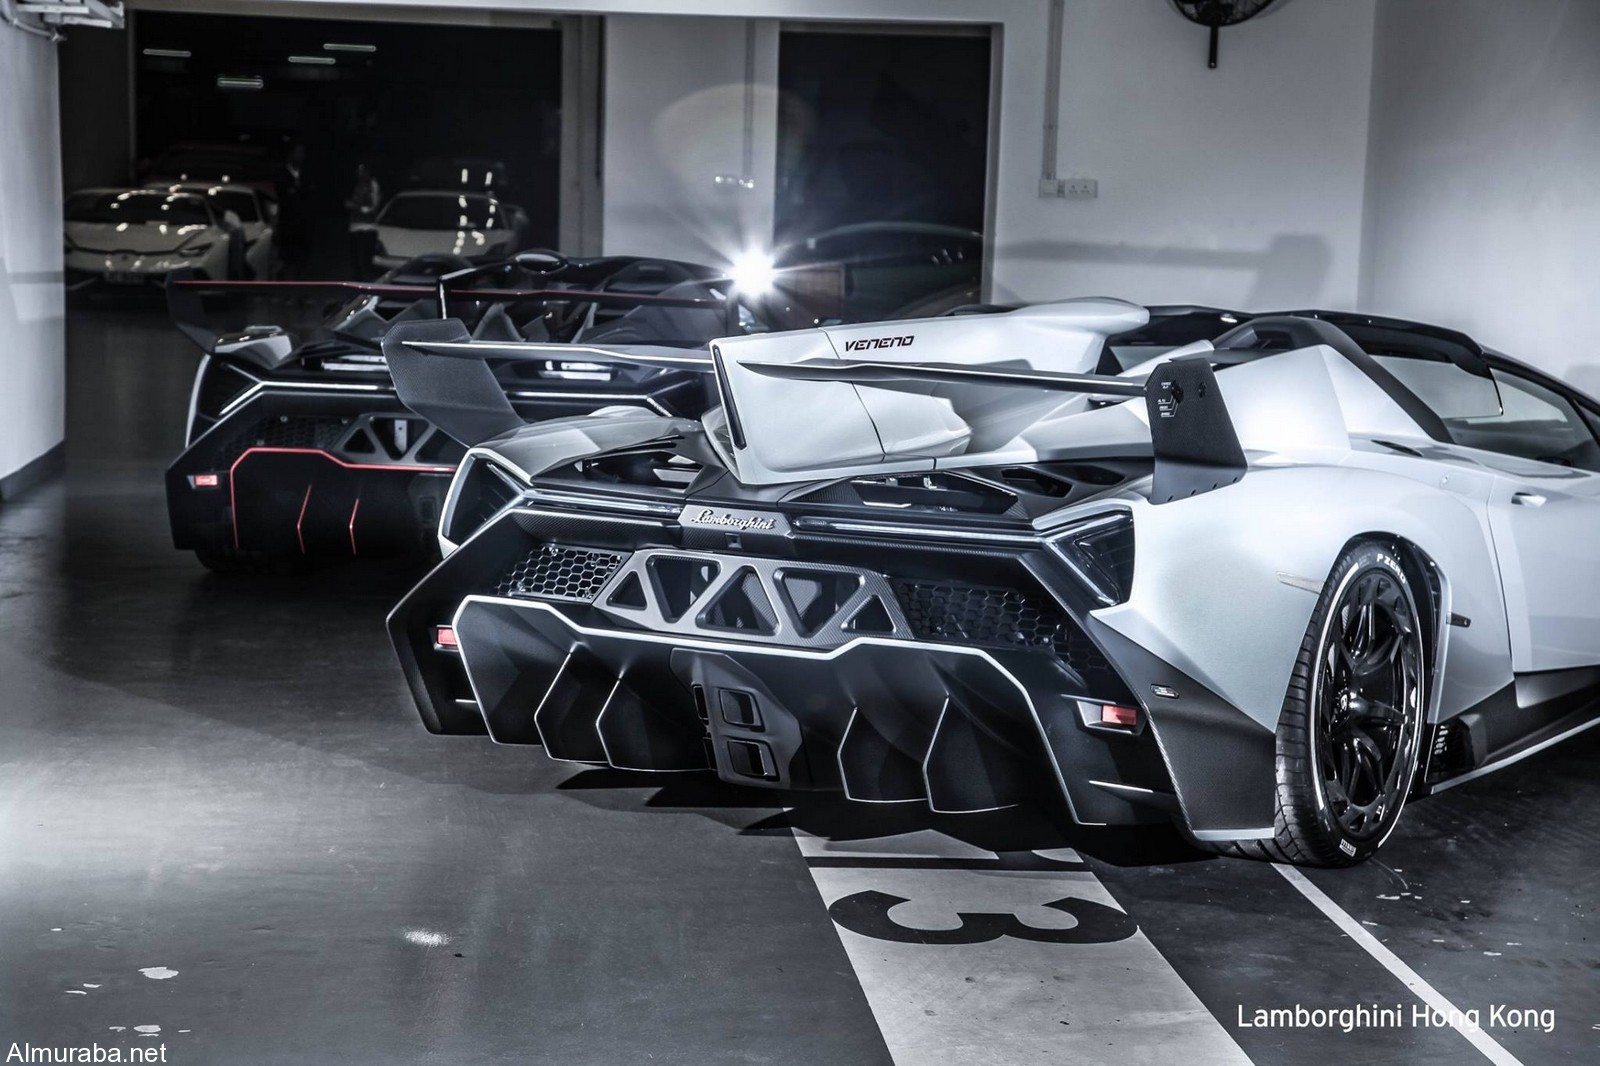 "لامبورجيني" فينينو رودستر تصل هونج كونج Lamborghini 1